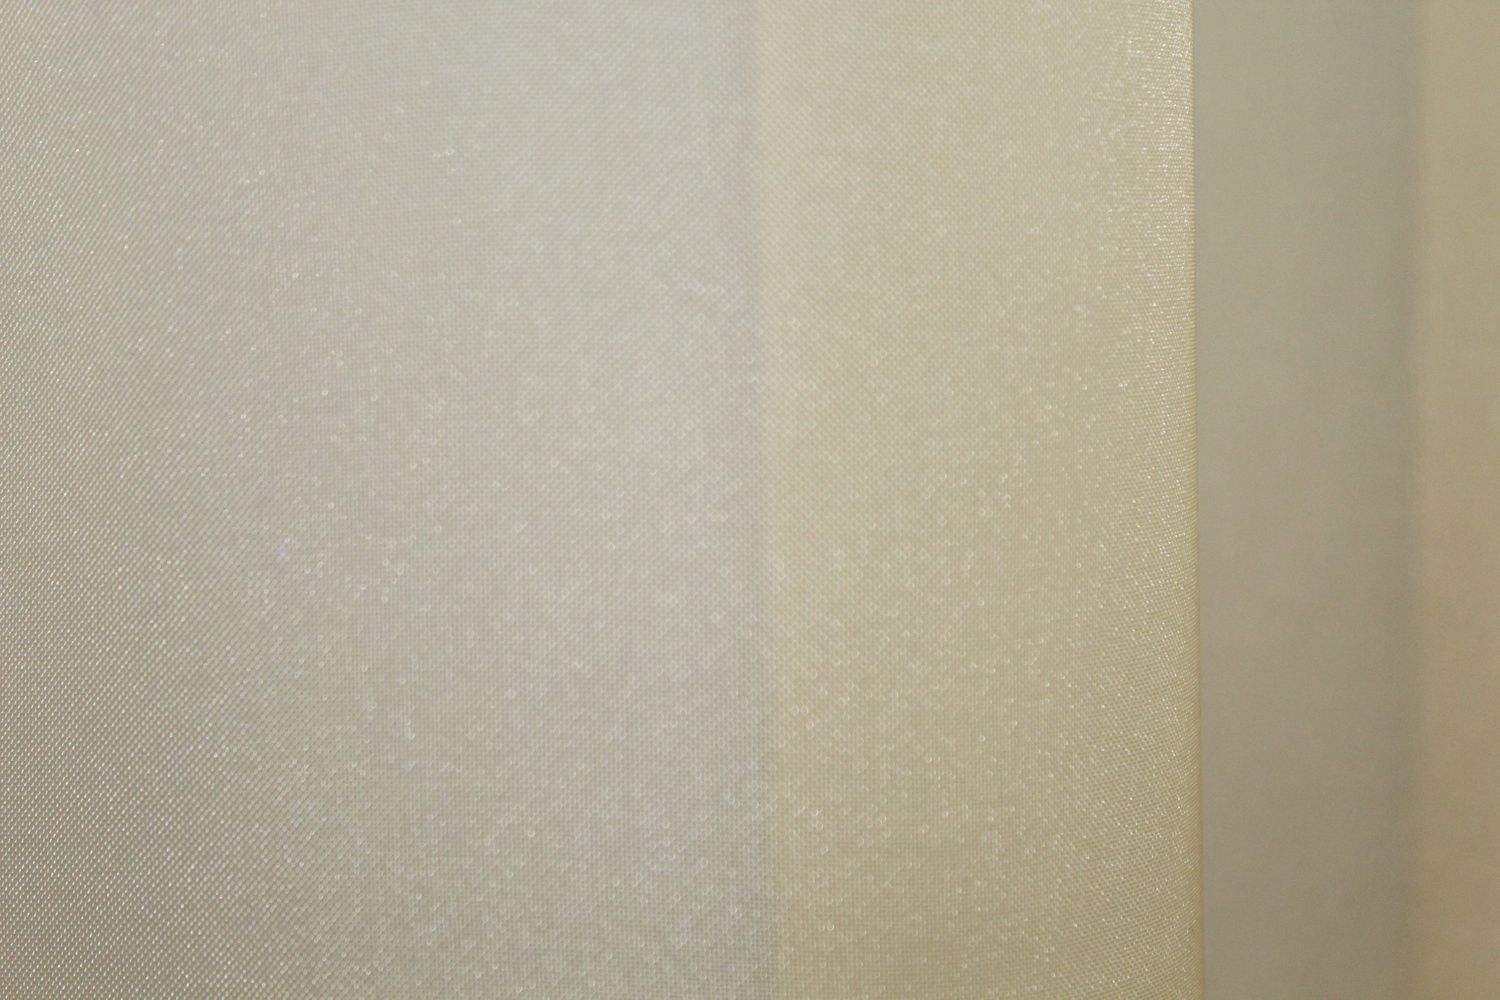 Комплект растяжка "Омбре" из шифона цвет золотистый с белым 031дк 753т, Комплект растяжка "Омбре" (3х2,5м+ 2шт. 1x2,5м)., 1 м., 2,5 м., 3,0 м., 2,5 м., 1,5 - 2 м., Штори 2шт. 1x2,5м.; тюль 3х2,5м.; подхваты 2шт., В комплекте 2 шт., Тесьма